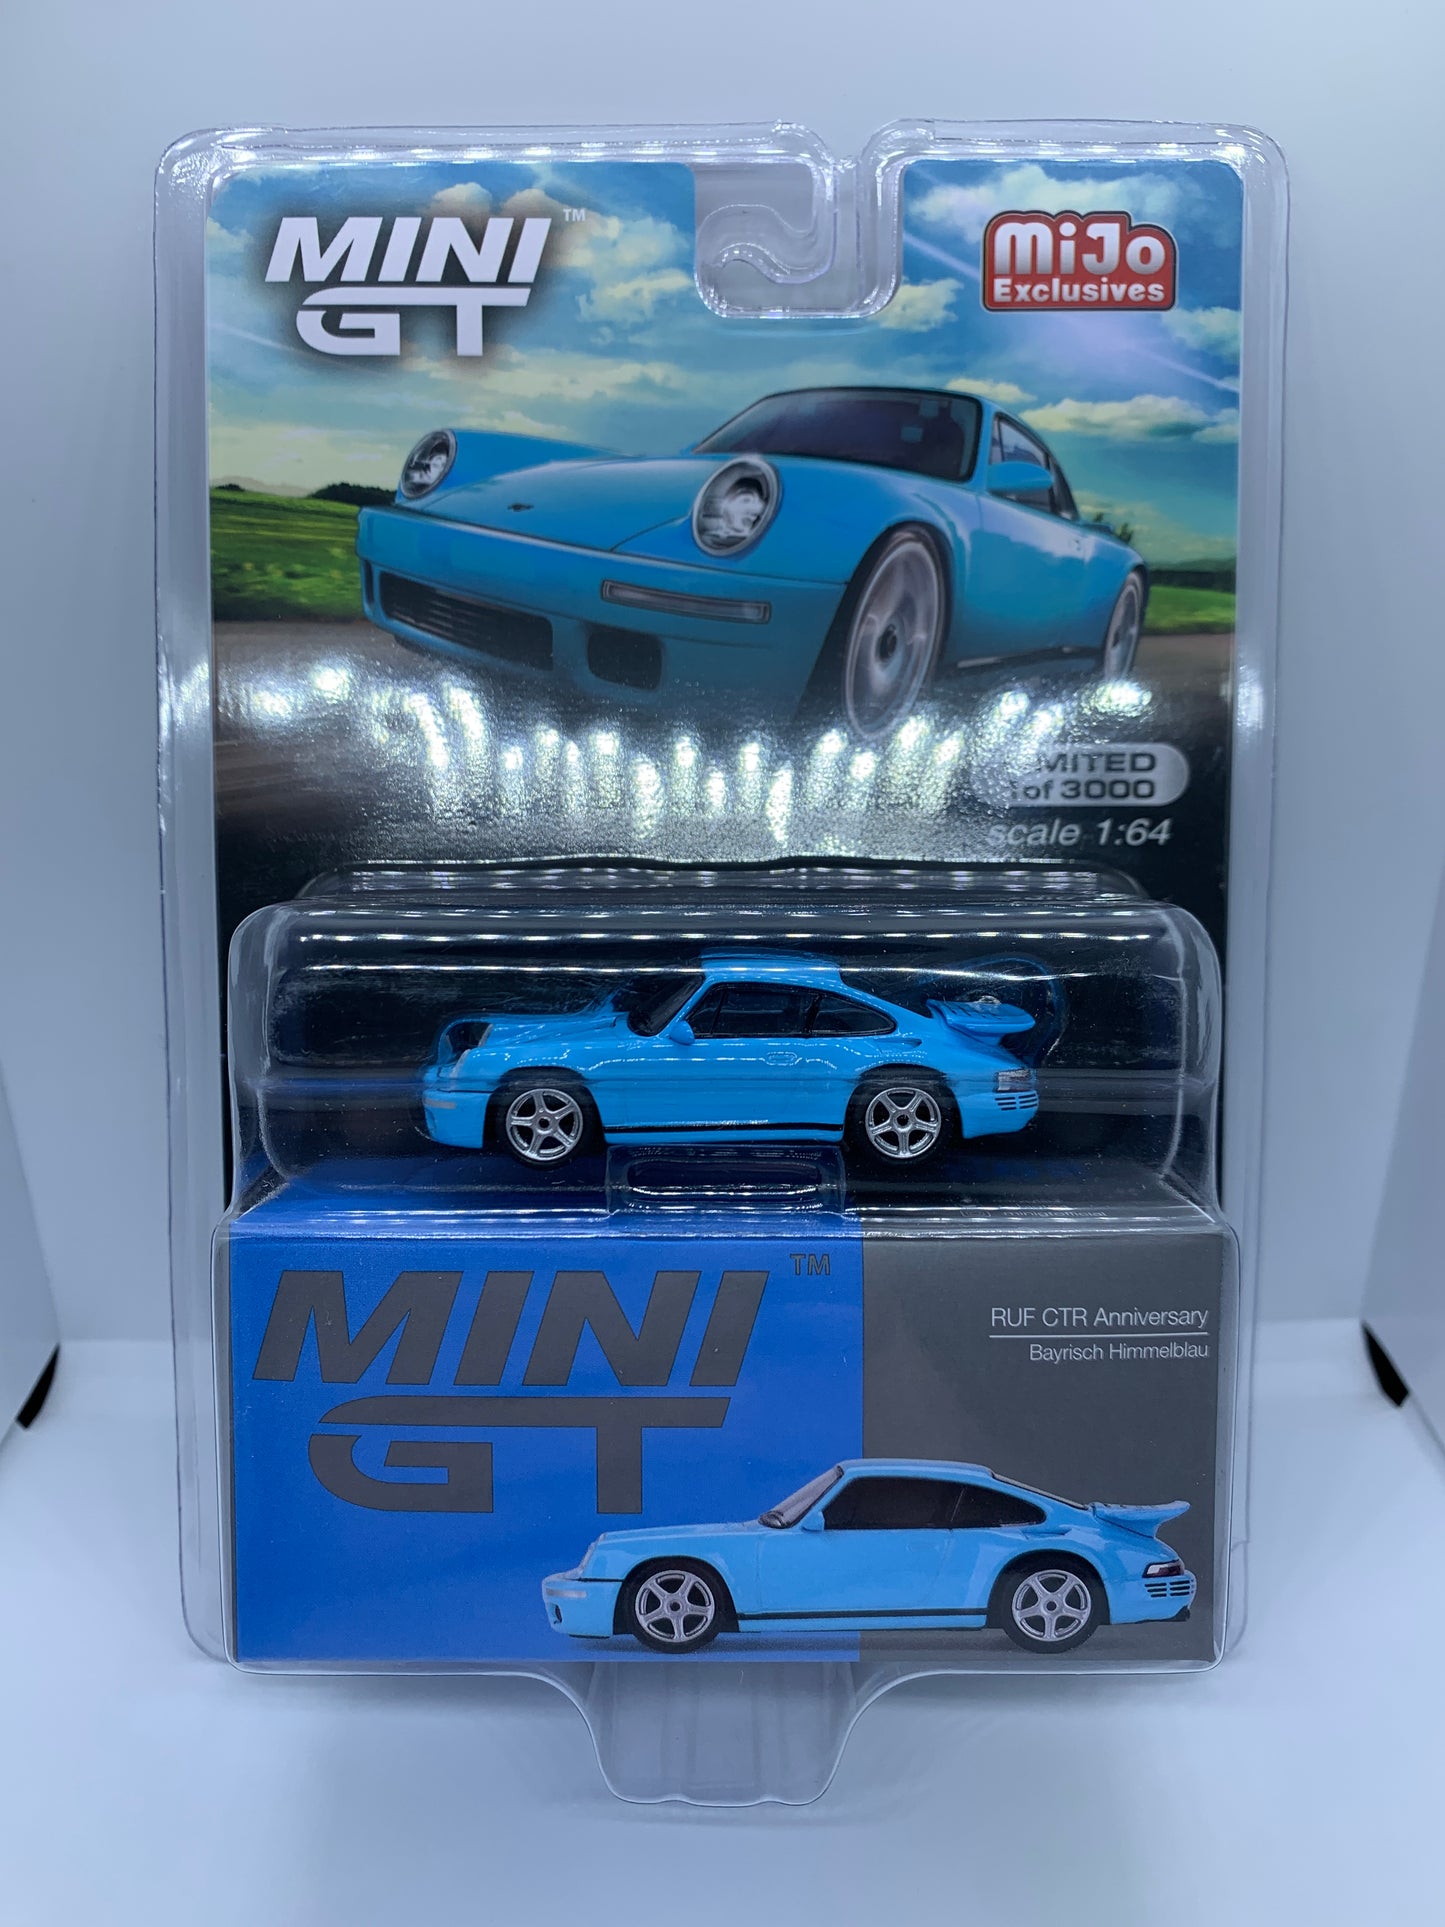 MINI GT - RUF CTR (Porsche 911 930) Blue - Display Blister Packaging